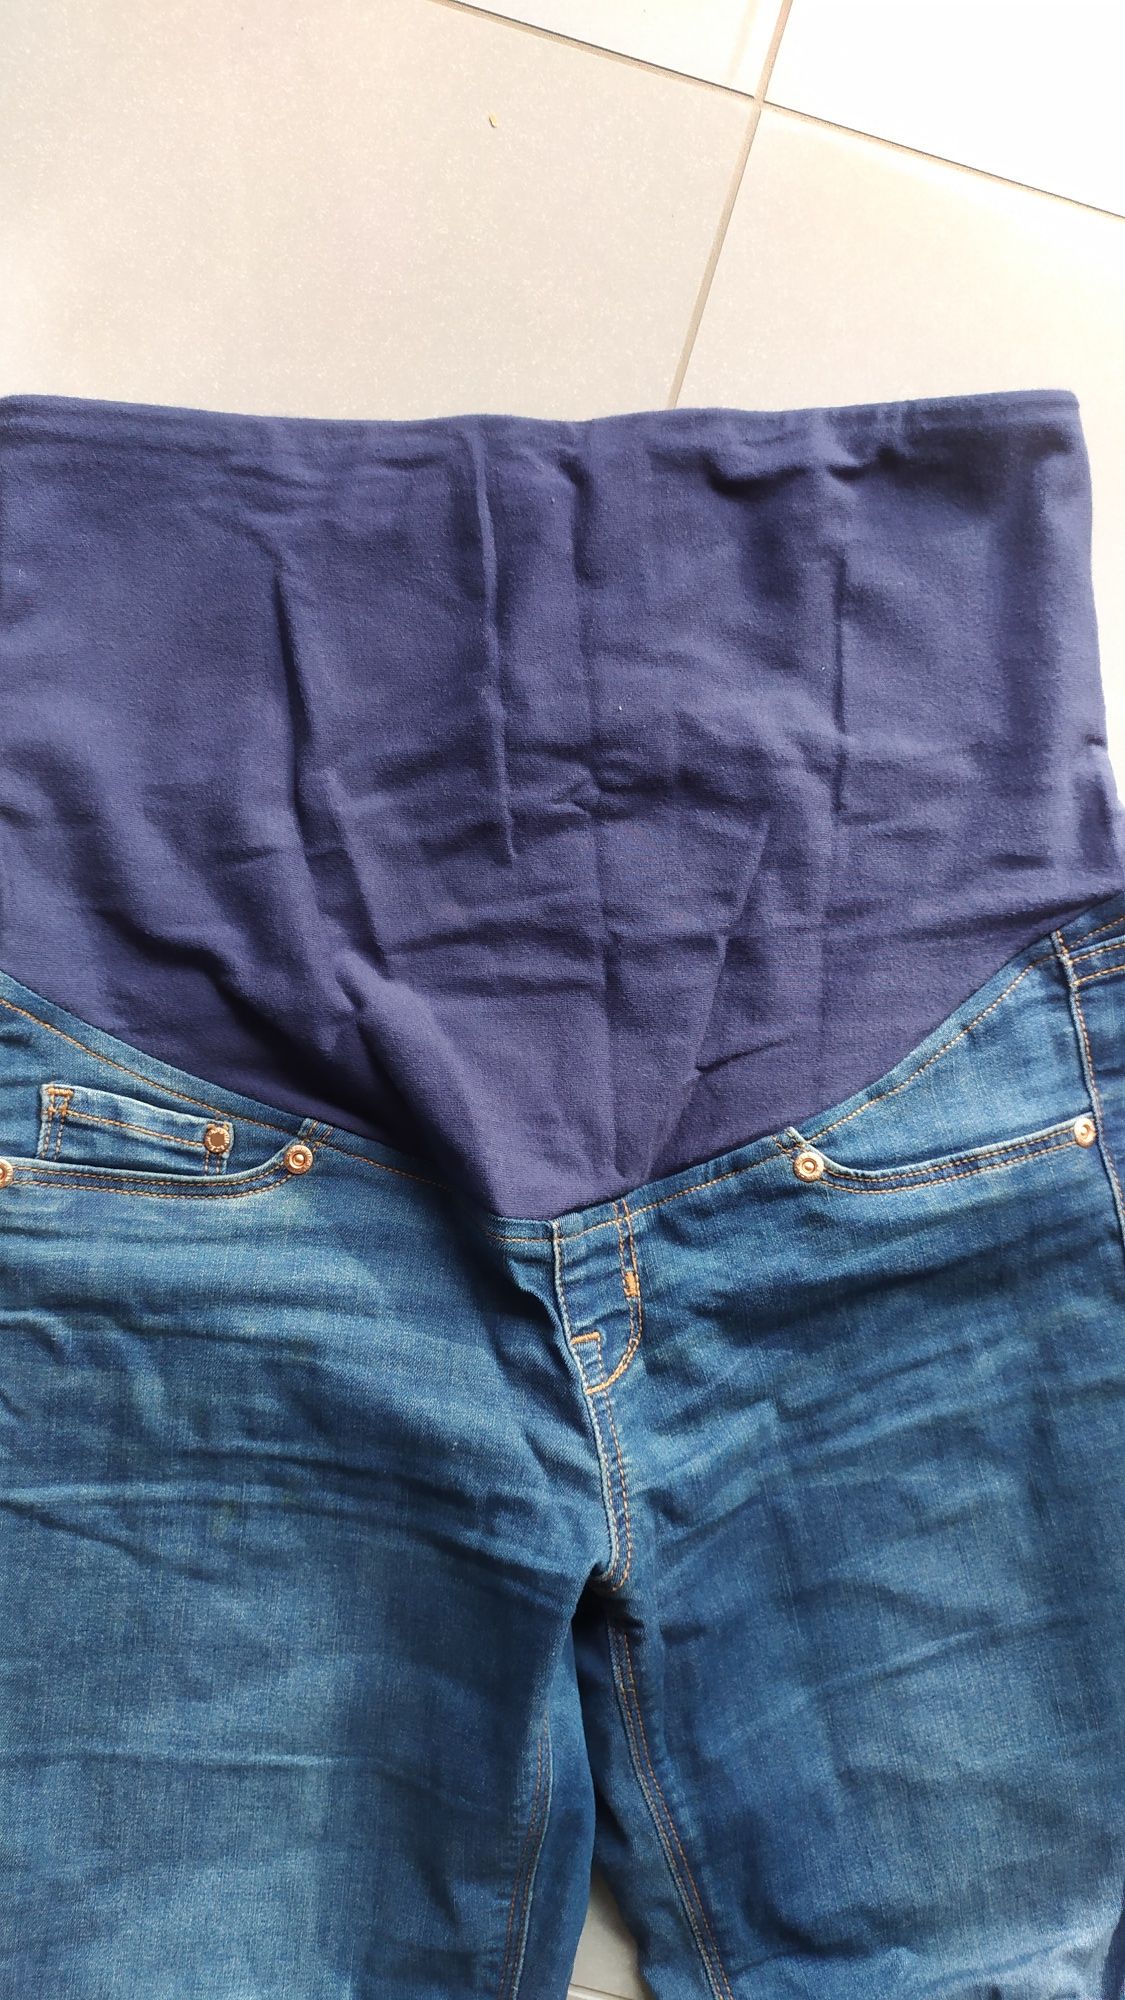 Dwie pary spodni ciążwych Firma H&M MAMA. Bluzka do karmienia Gratis!!